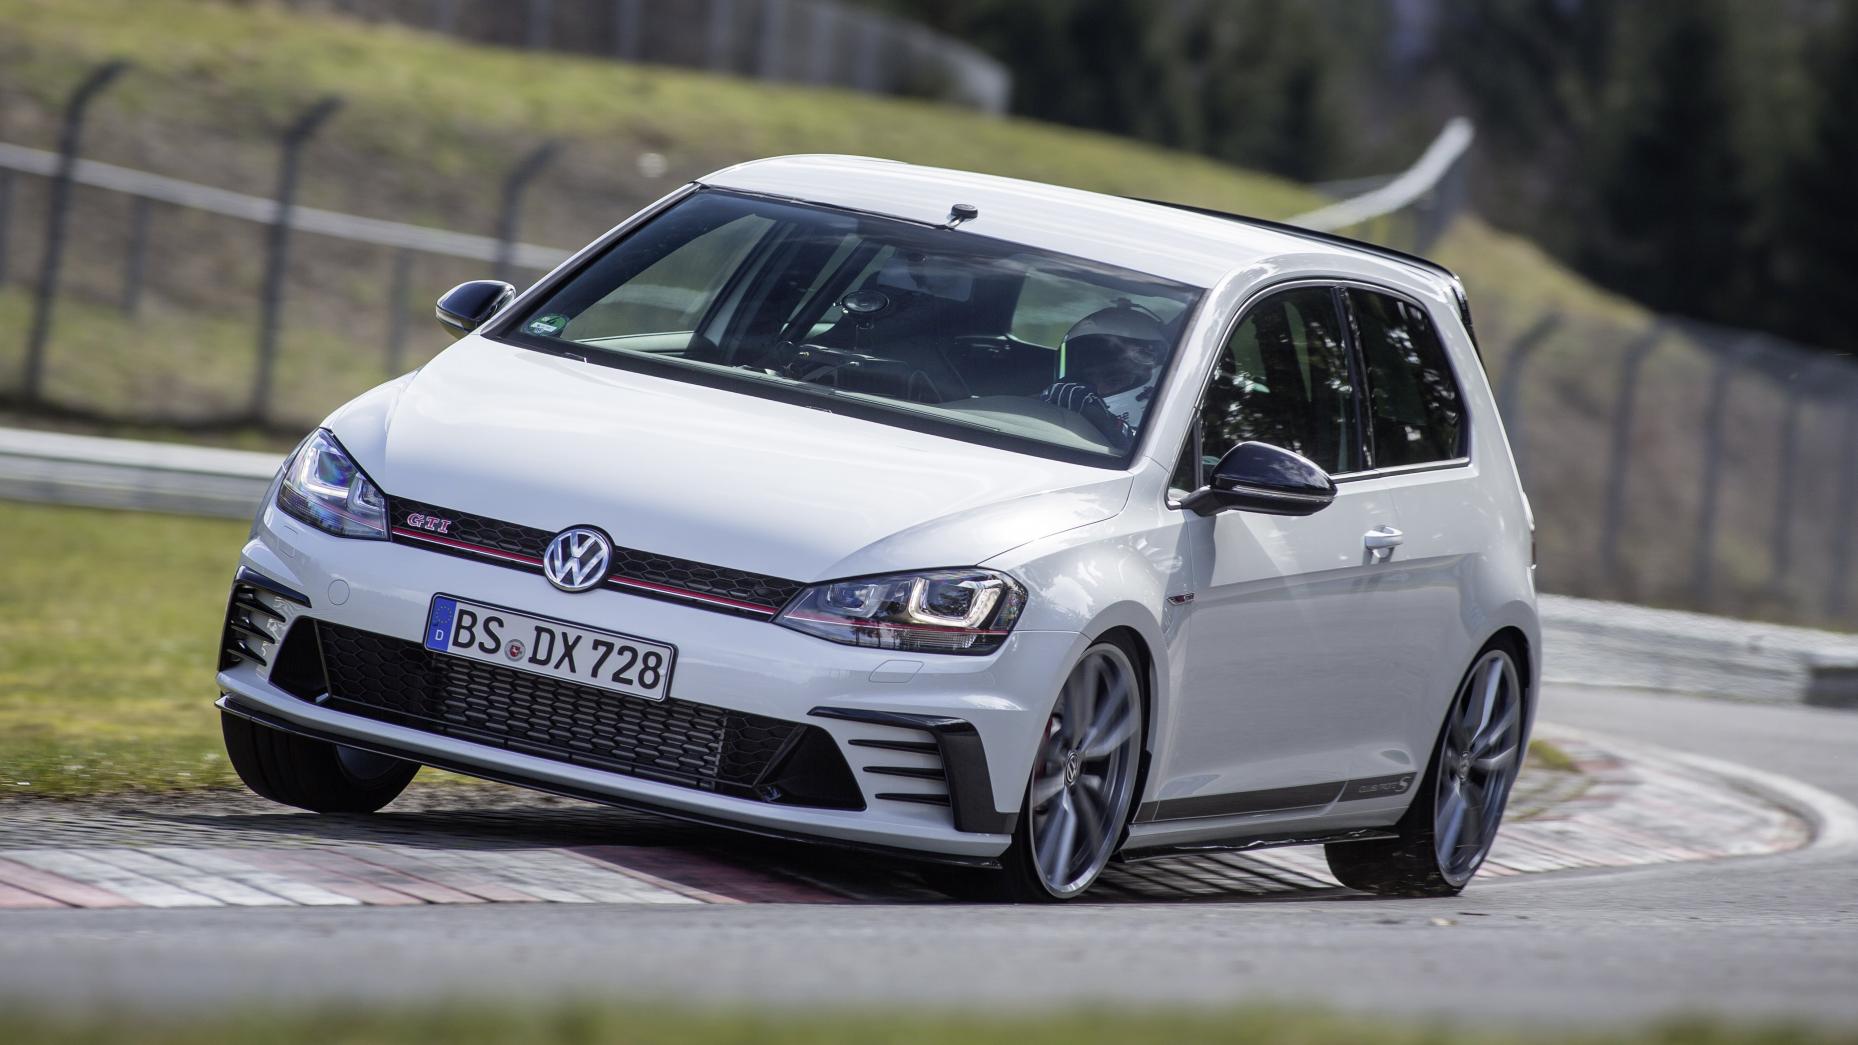 TopGear | Volkswagen's hot Golf history in pics